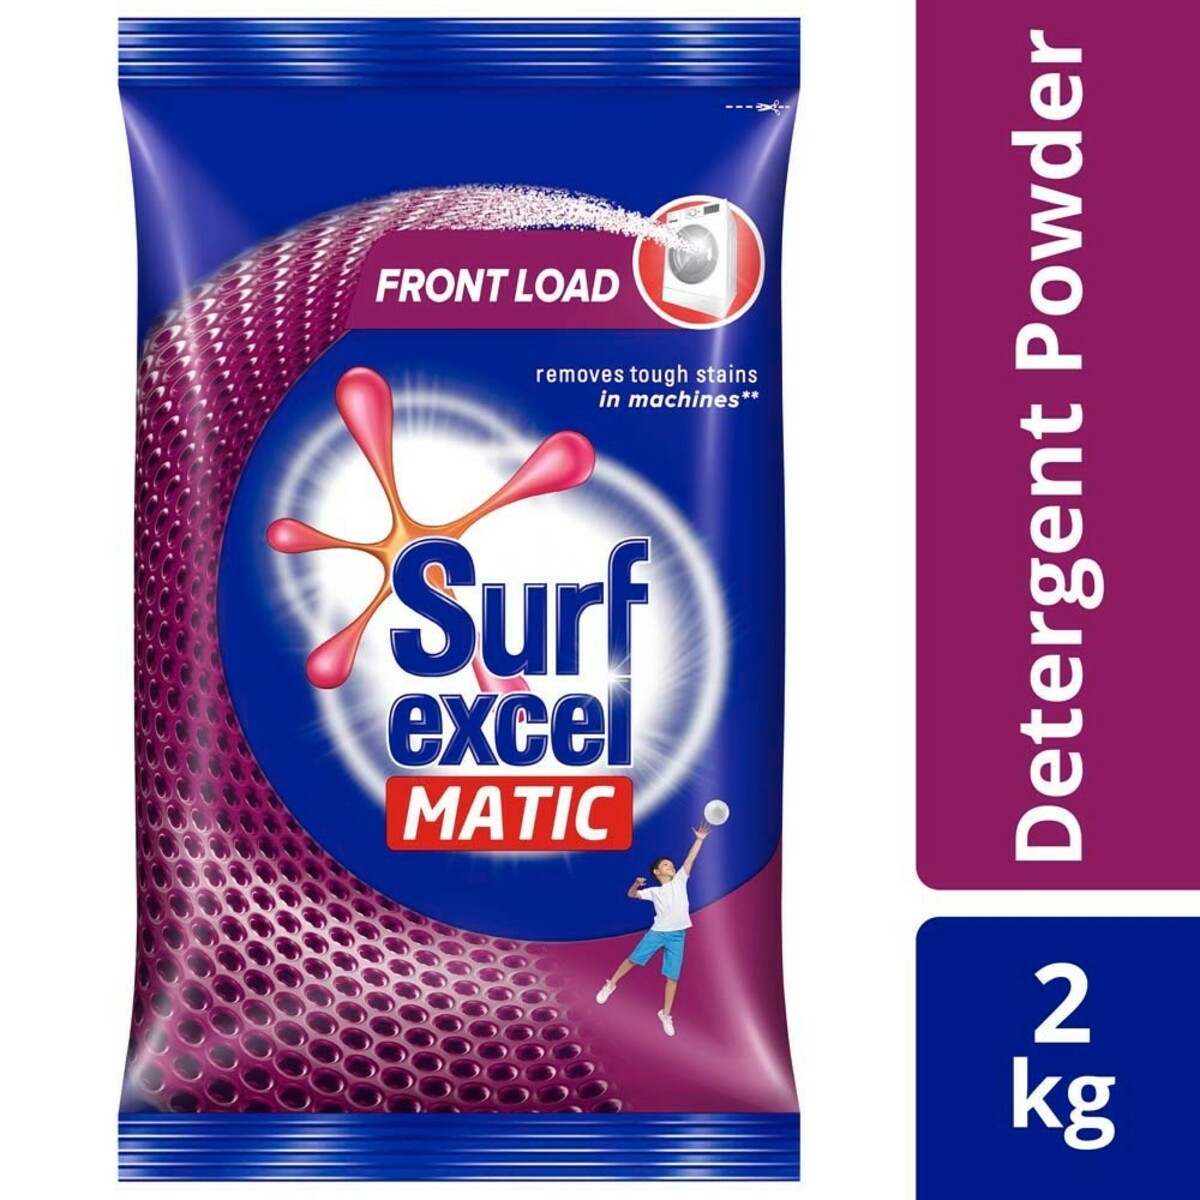 Surf Excel Matic Front Load 2Kg